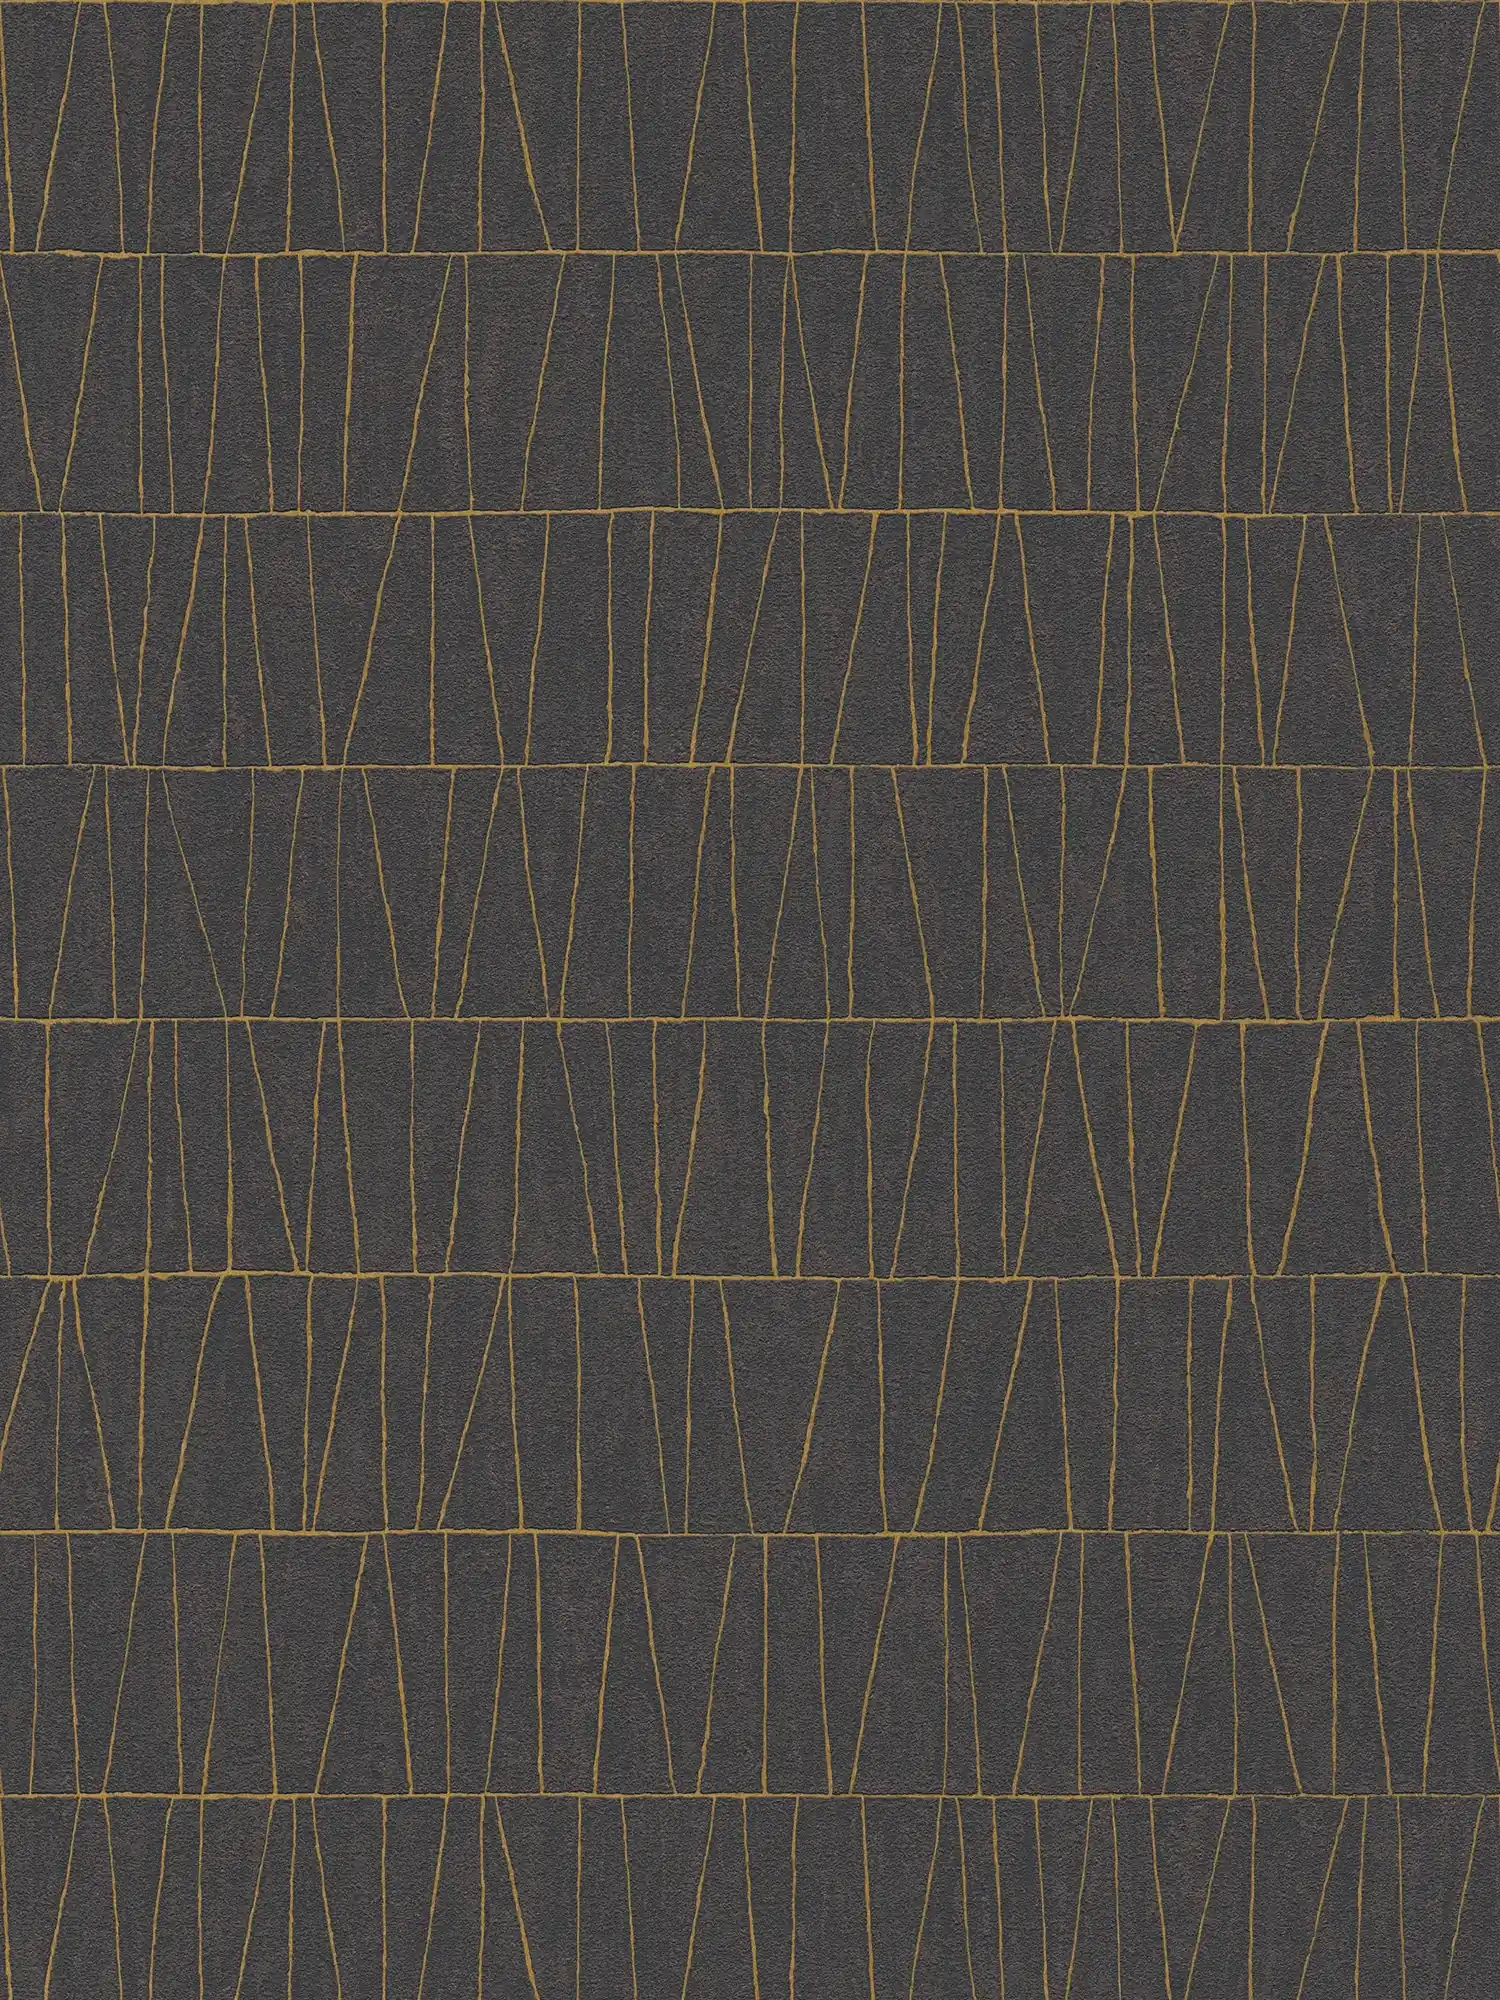 Edle Mustertapete mit goldenen Details – Schwarz, Gold, Anthrazit
